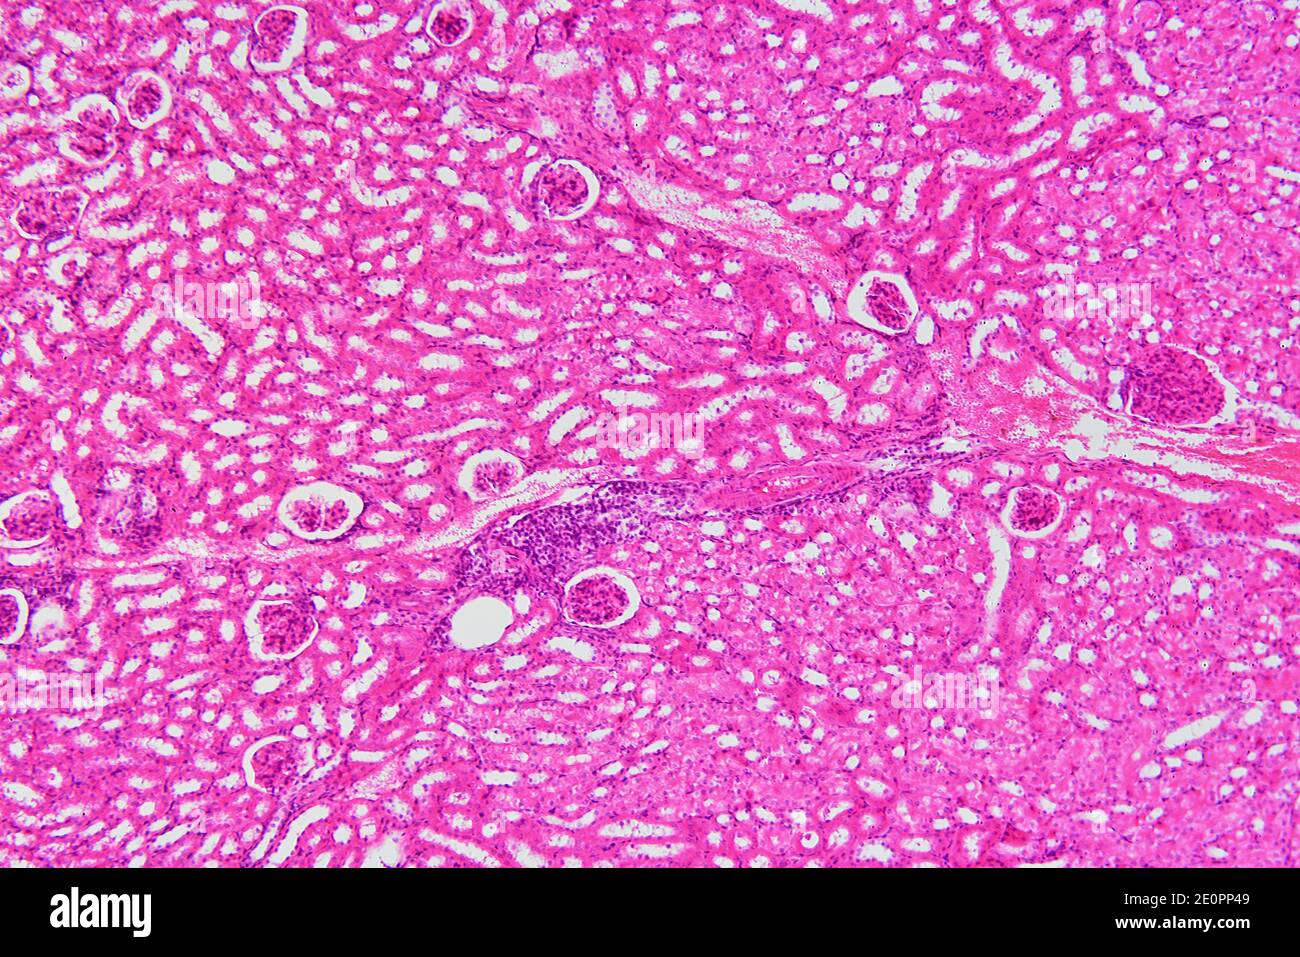 Sezione renale umana con sangue iniettato che mostra glomeruli, corpuscoli malfighiani e parenchima. X75 a 10 cm di larghezza. Foto Stock